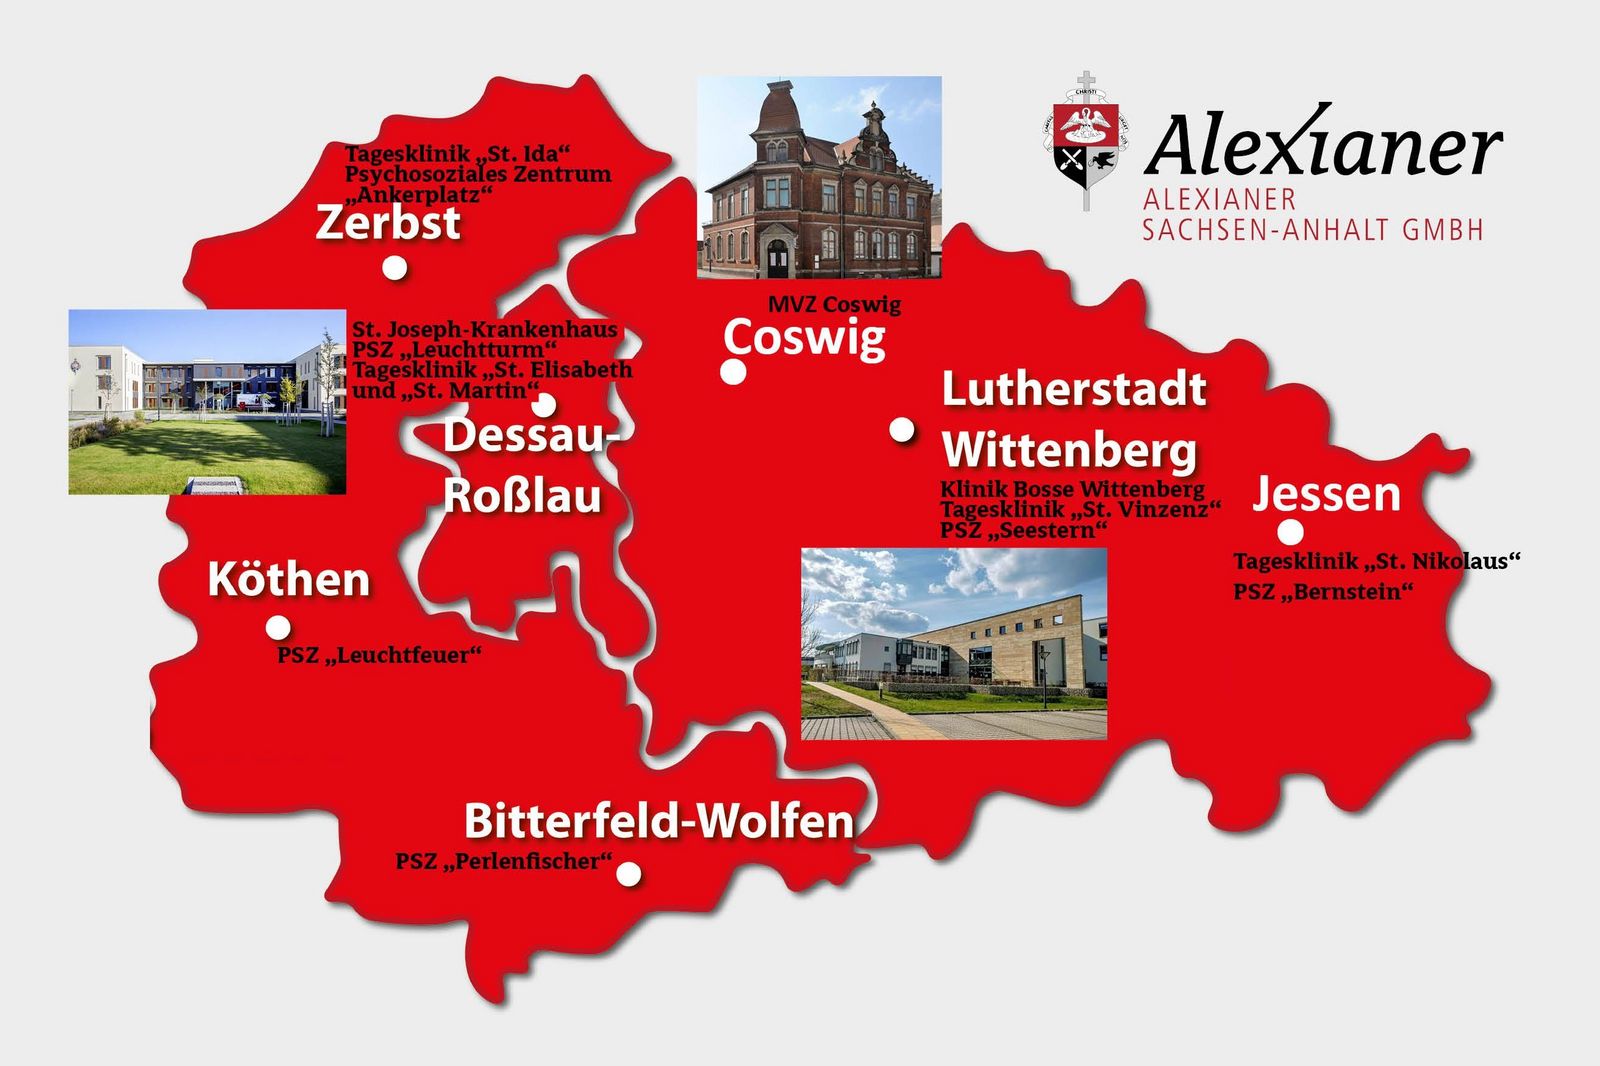 Alexianer Sachsen-Anhalt